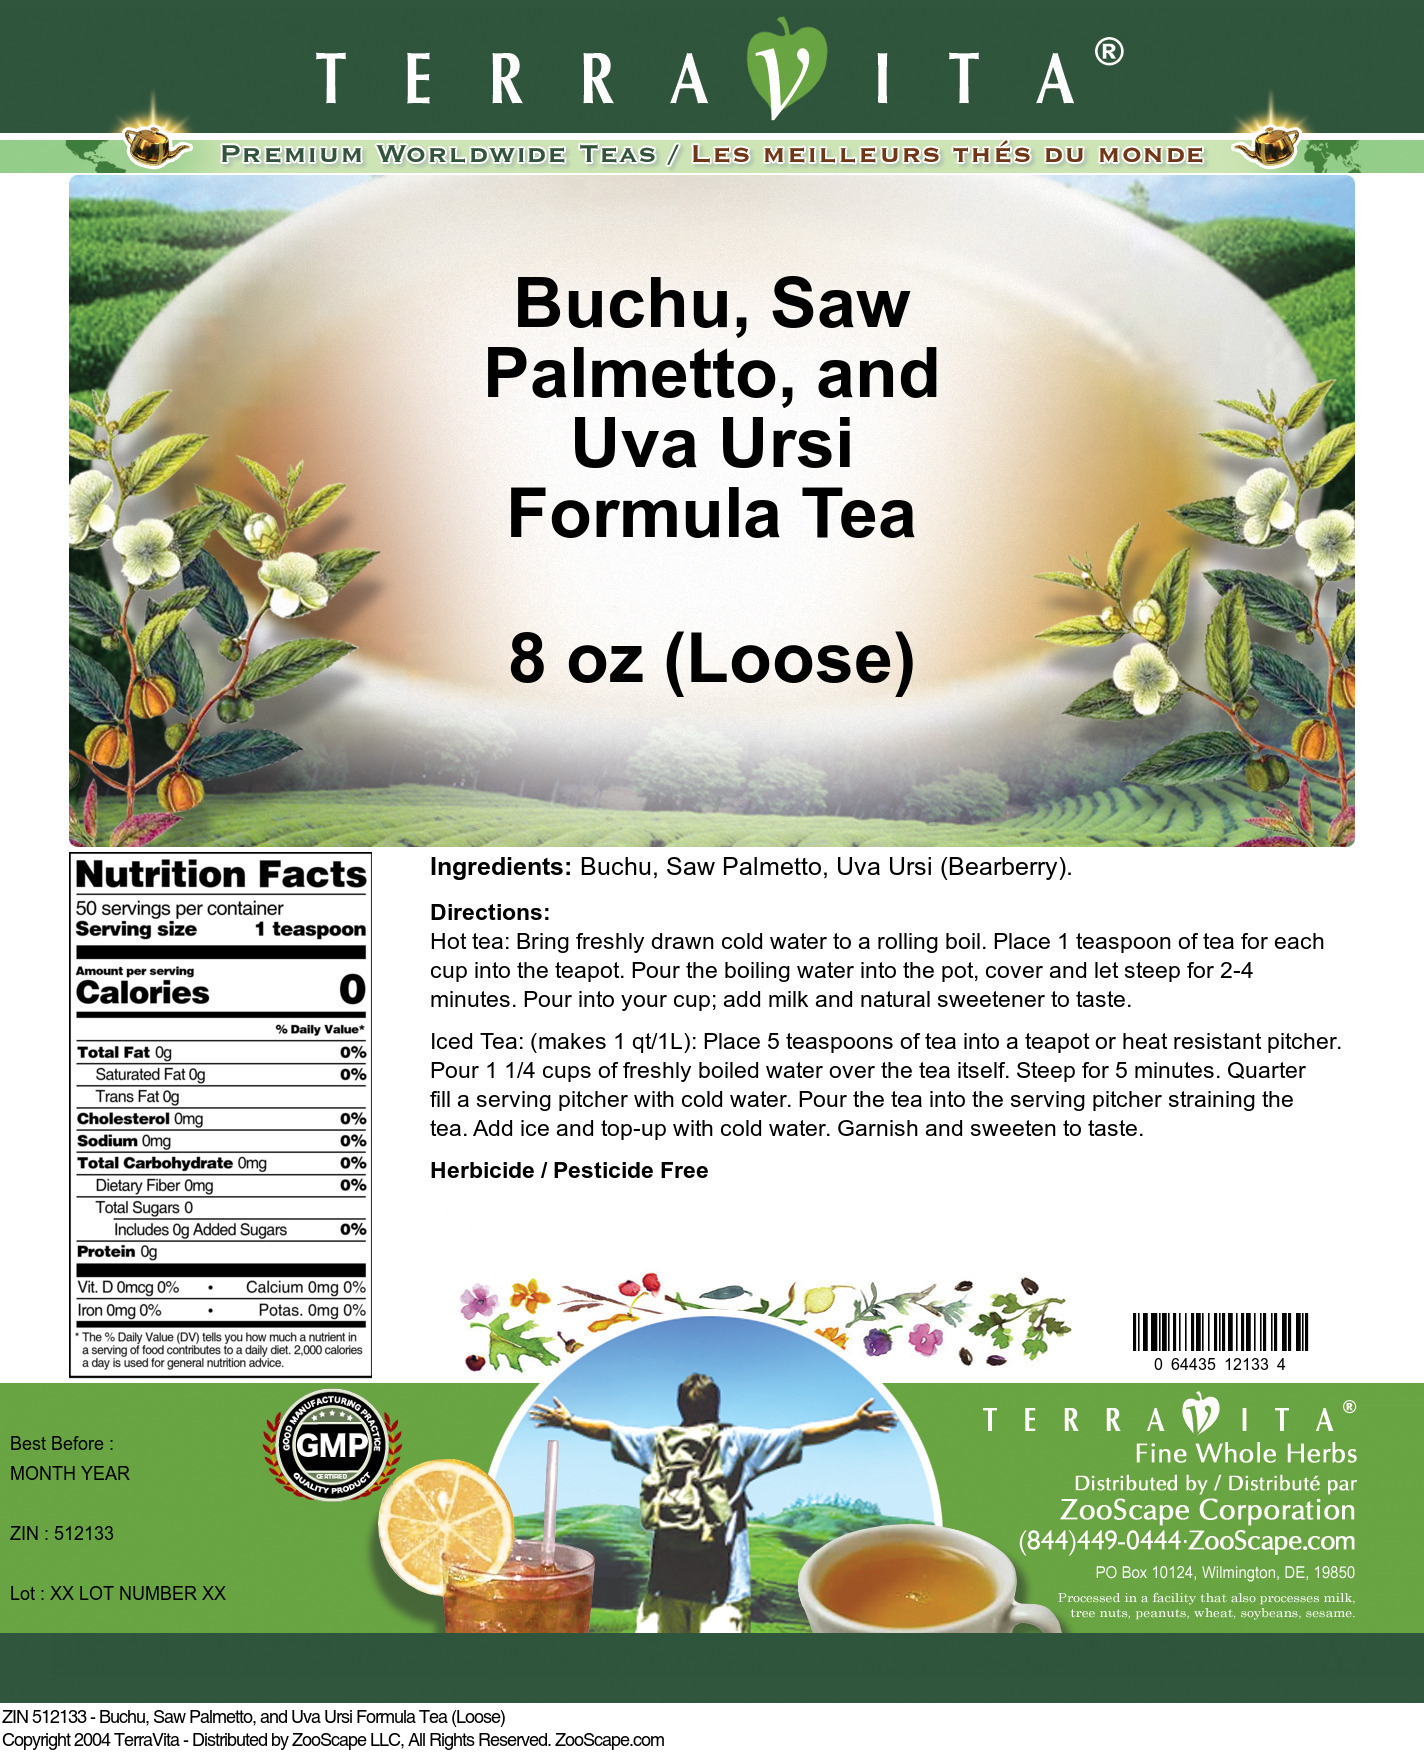 Buchu, Saw Palmetto, and Uva Ursi Formula Tea (Loose) - Label